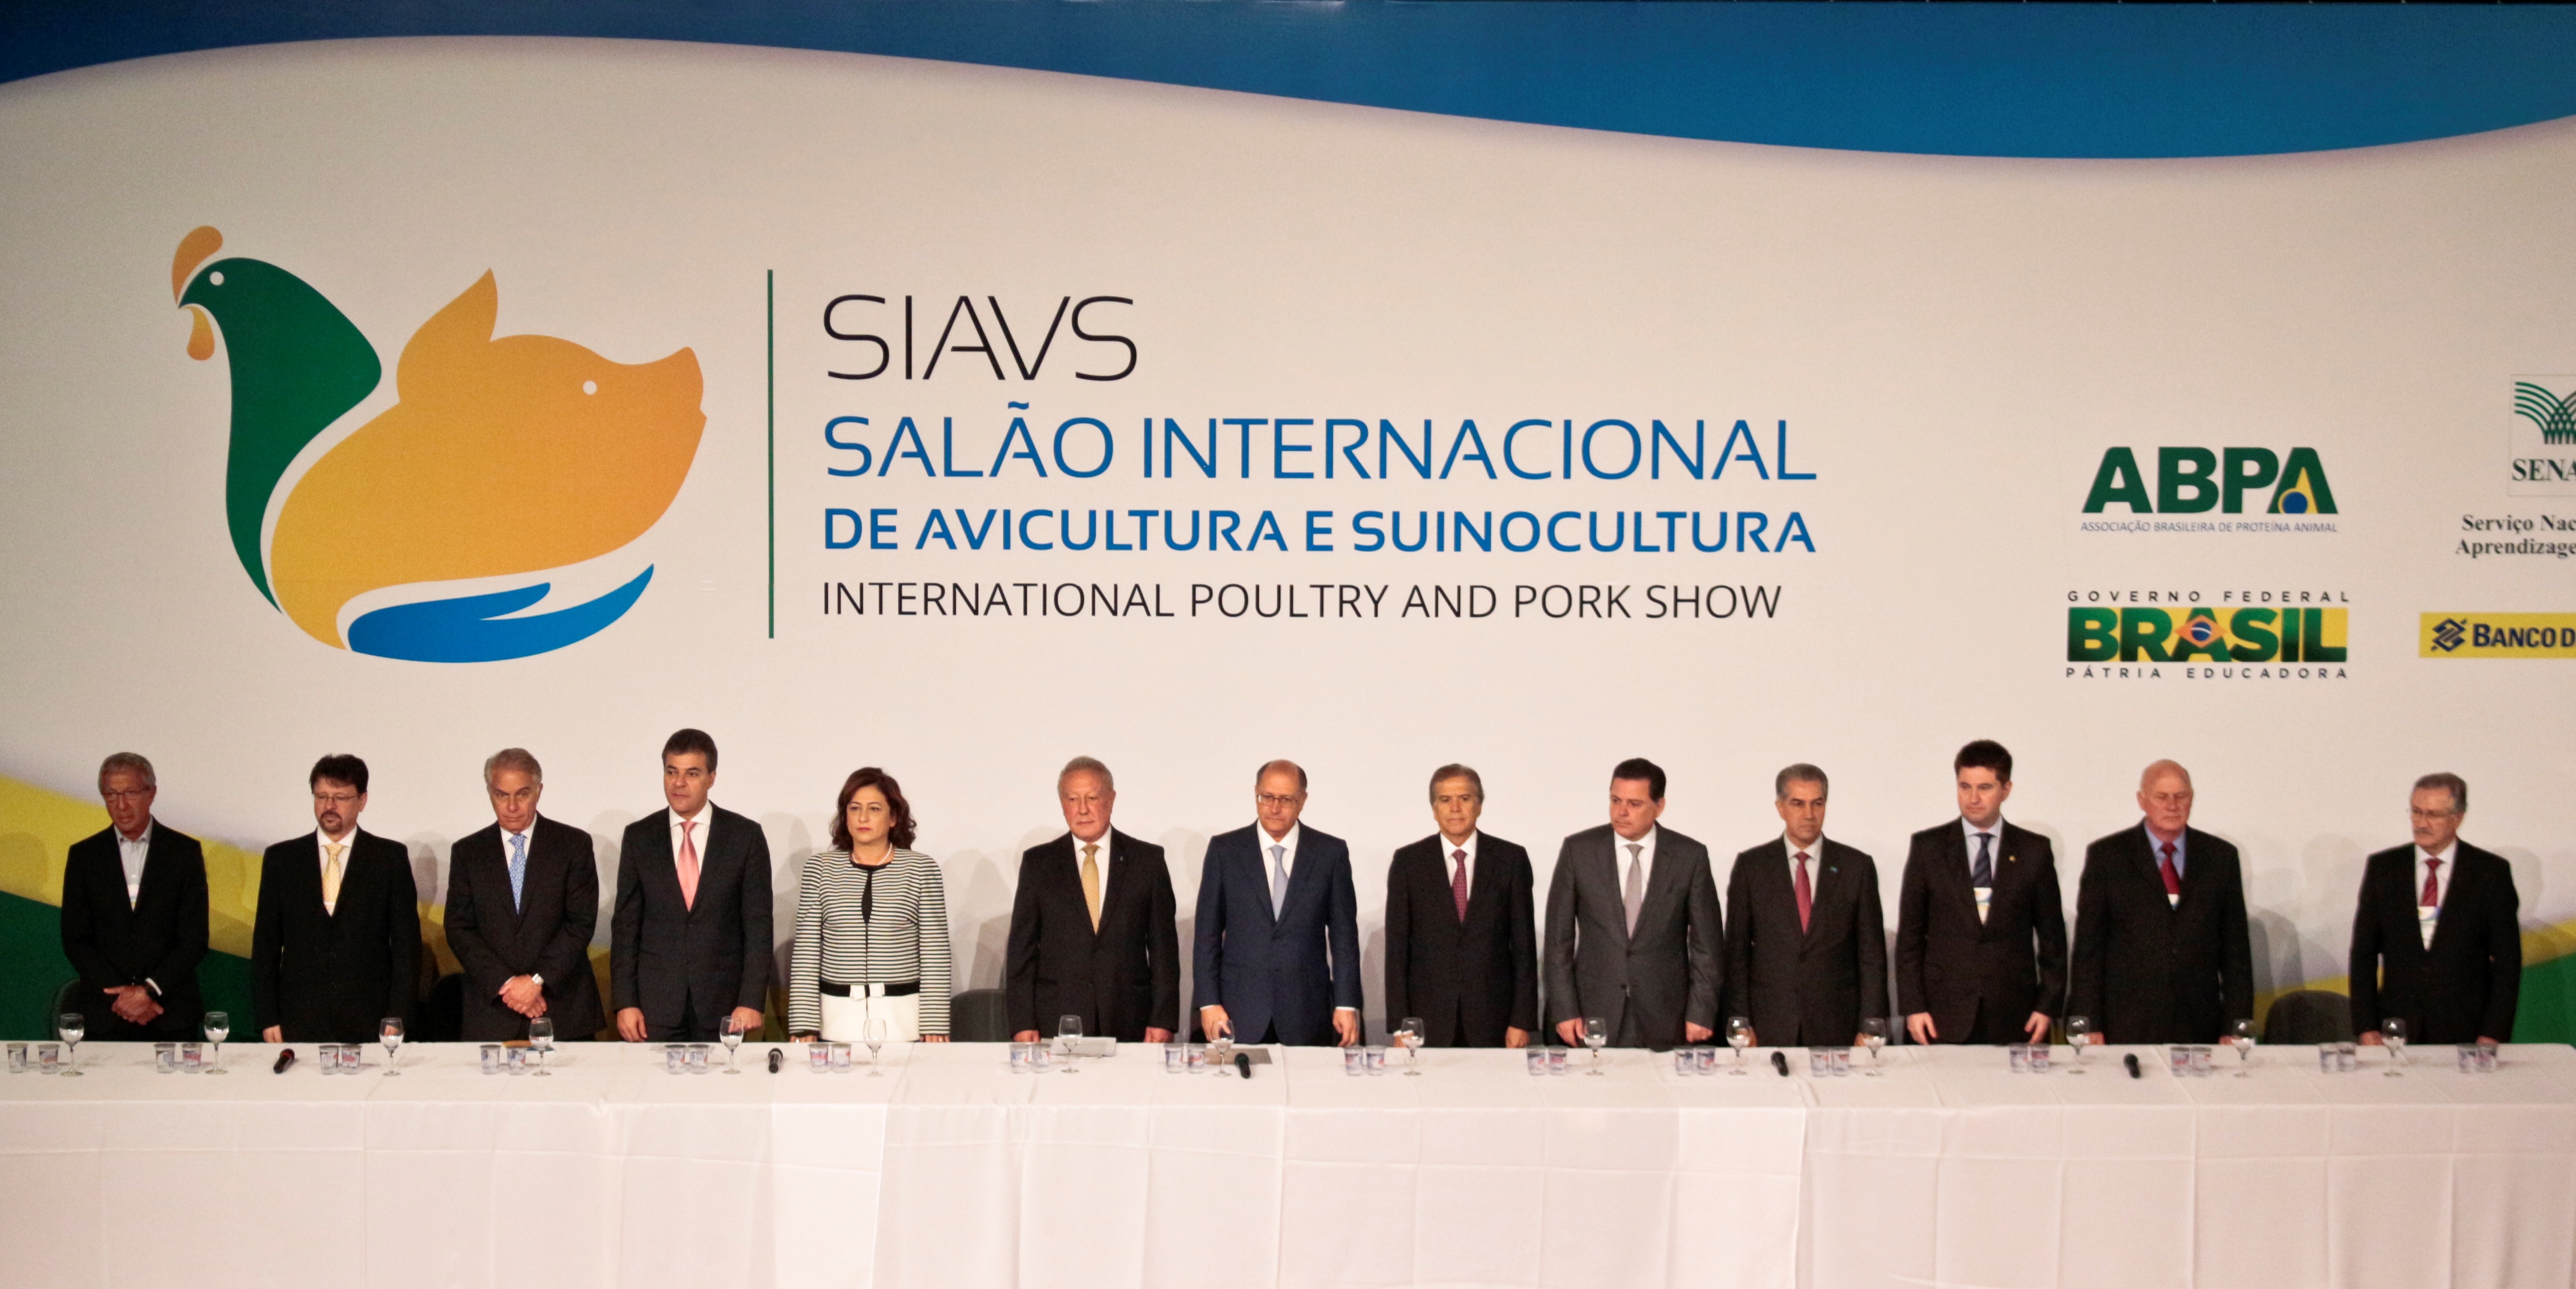 SIAVS - Salão Internacional de Avicultura e Suinocultura 2017